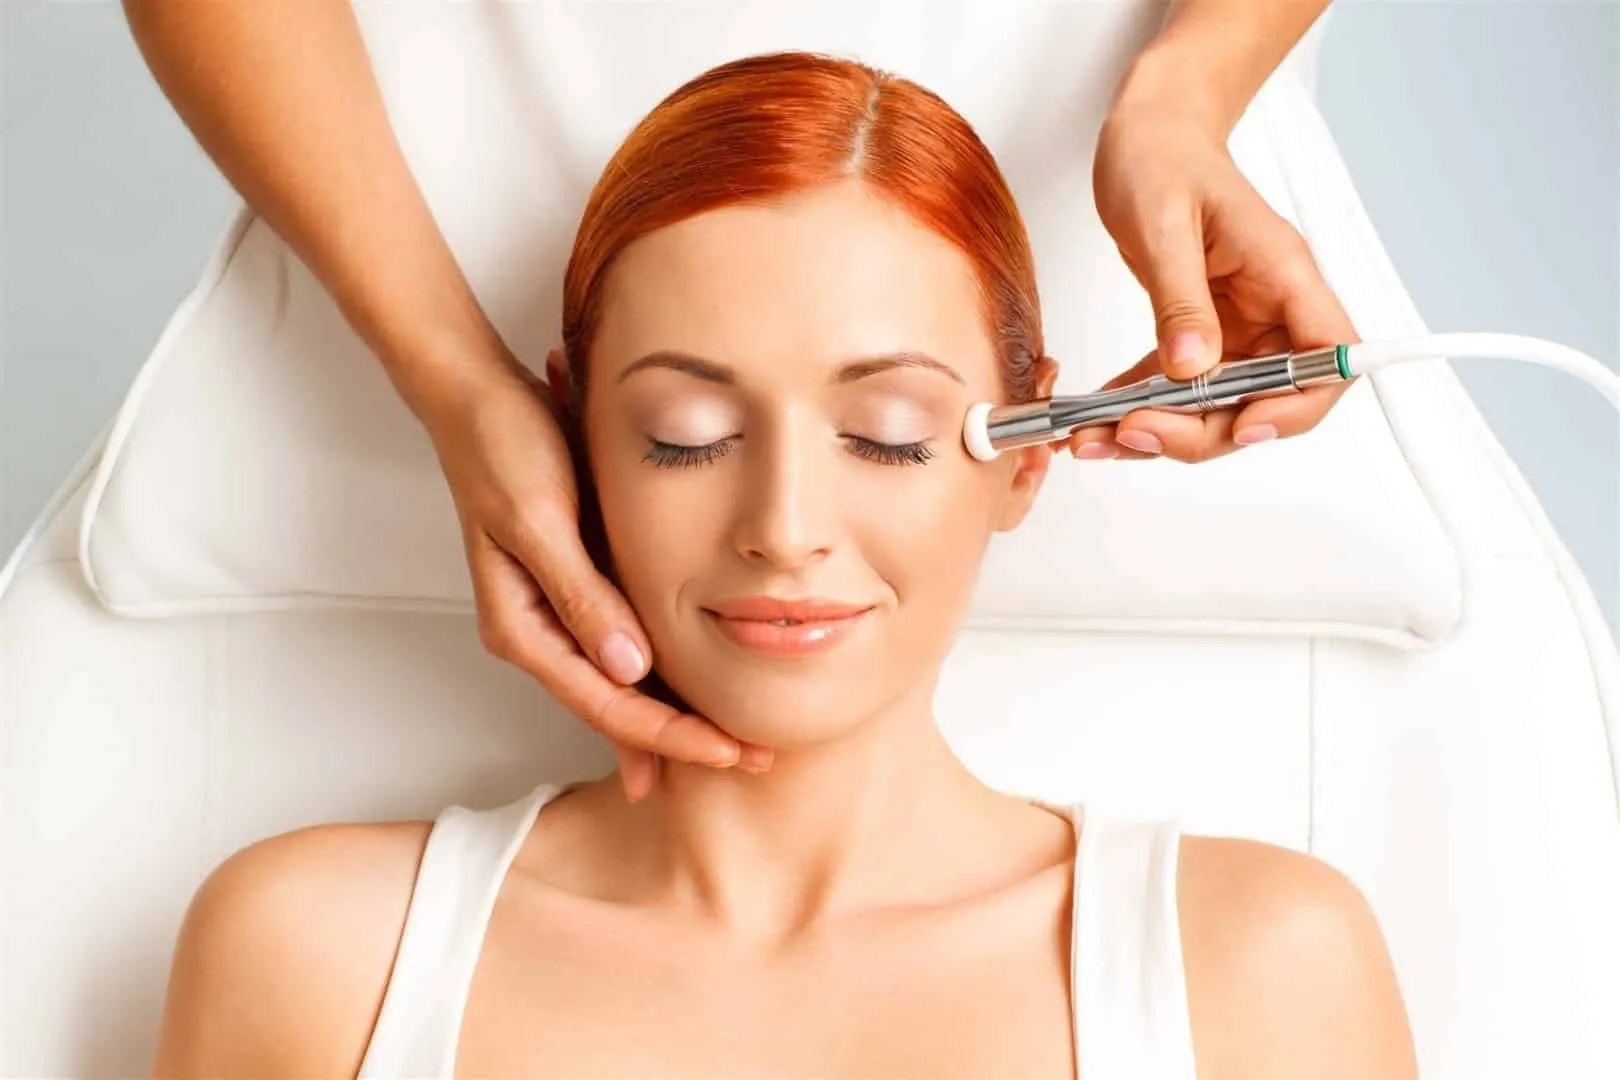 Blanqueamiento de la piel: obtenga más información sobre cómo funcionan estos tratamientos